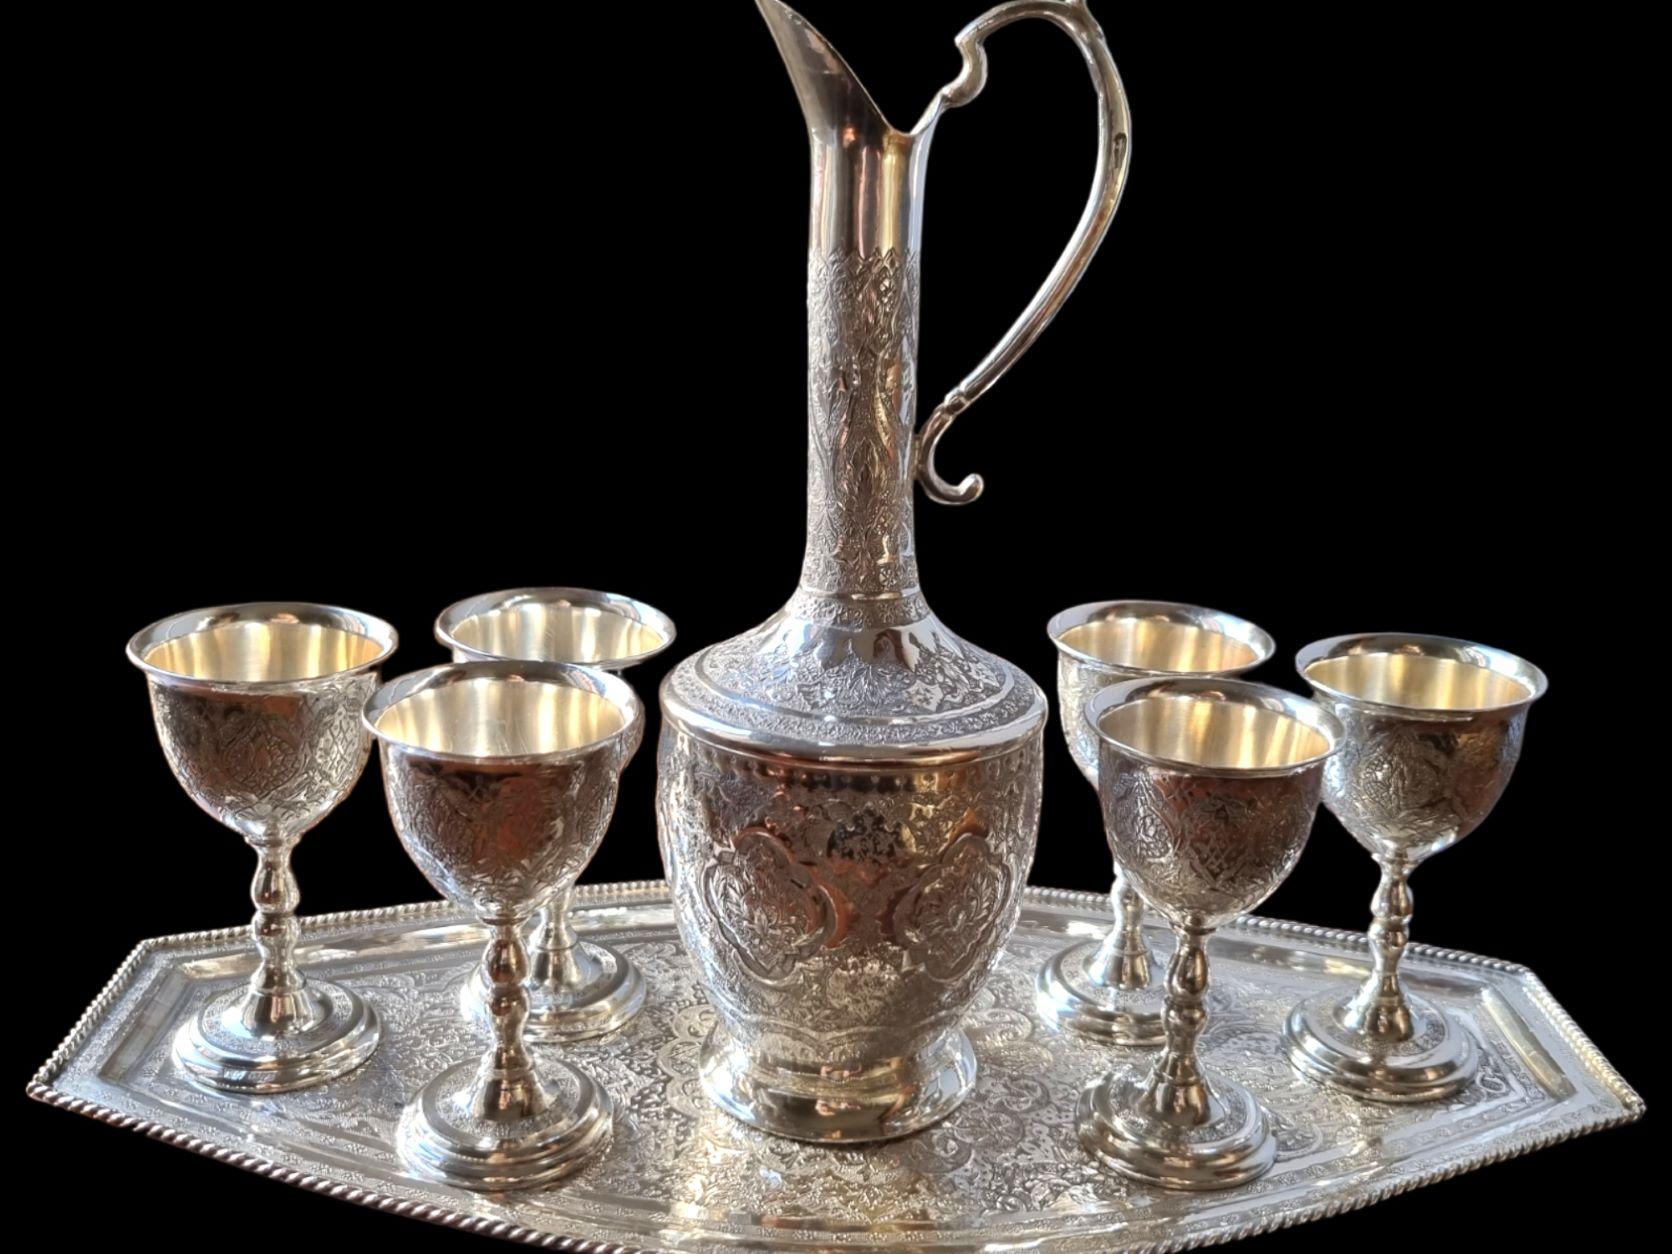 Erste Hälfte des 20. Jahrhunderts Persisches islamisches Trinkgeschirr aus massivem Silber, bestehend aus einem Krug und sechs Bechern auf einem Tablett, jedes Stück reichlich graviert und ziseliert mit typisch persischem Arabeskendekor, der Krug